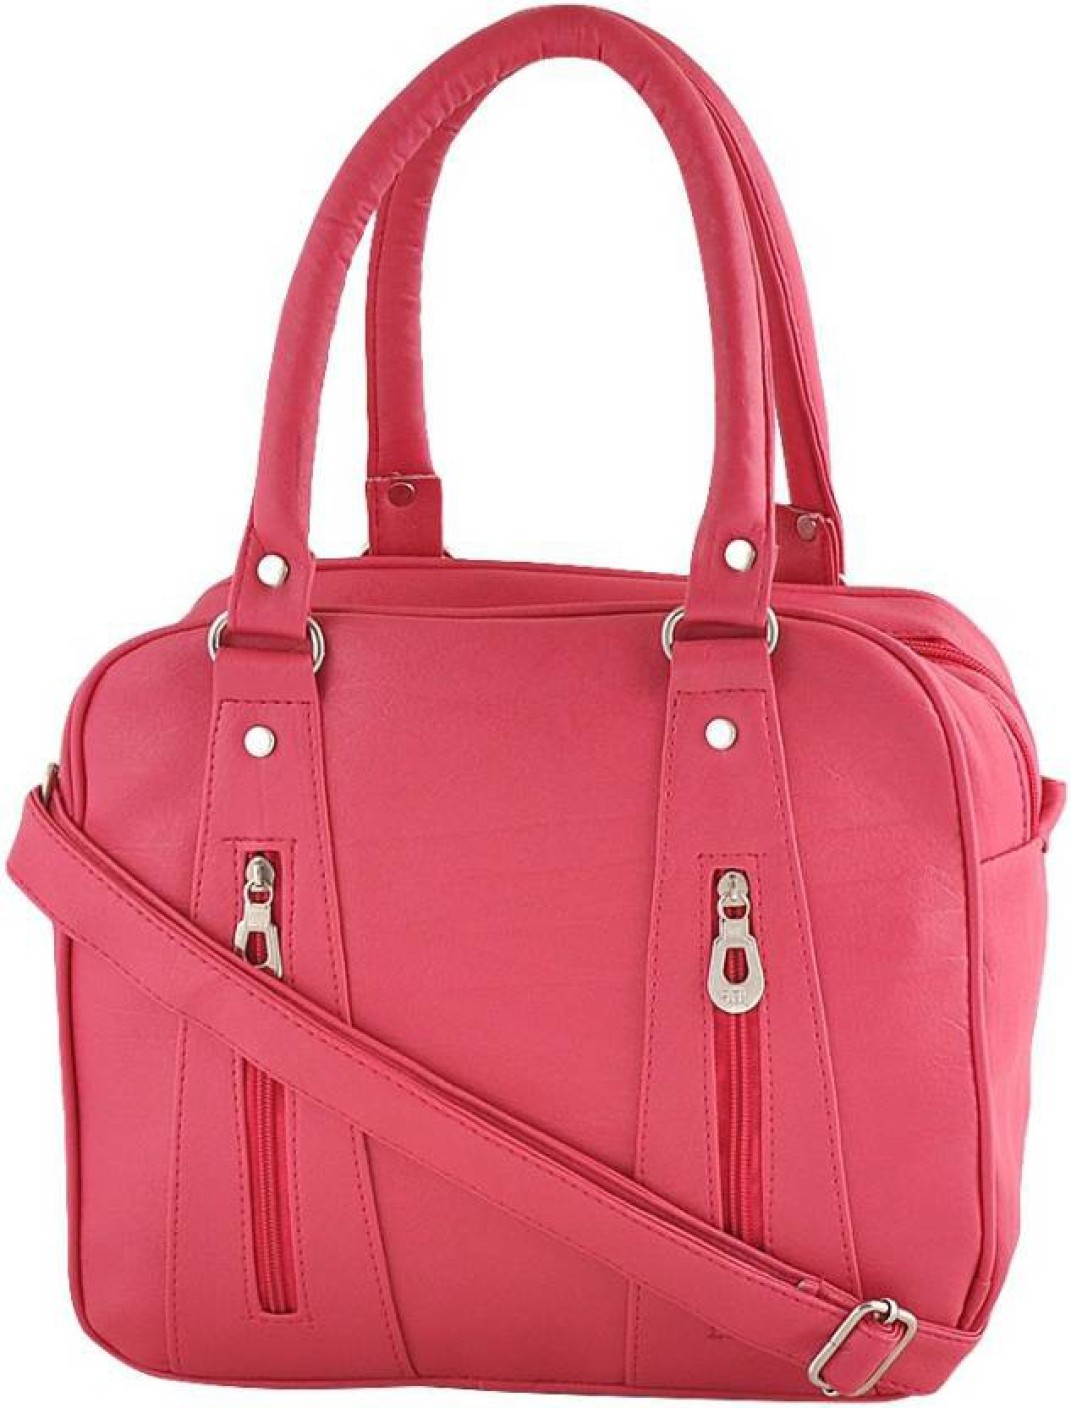 Buy Stufflo Hand-held Bag Pink Online @ Best Price in India | Flipkart.com